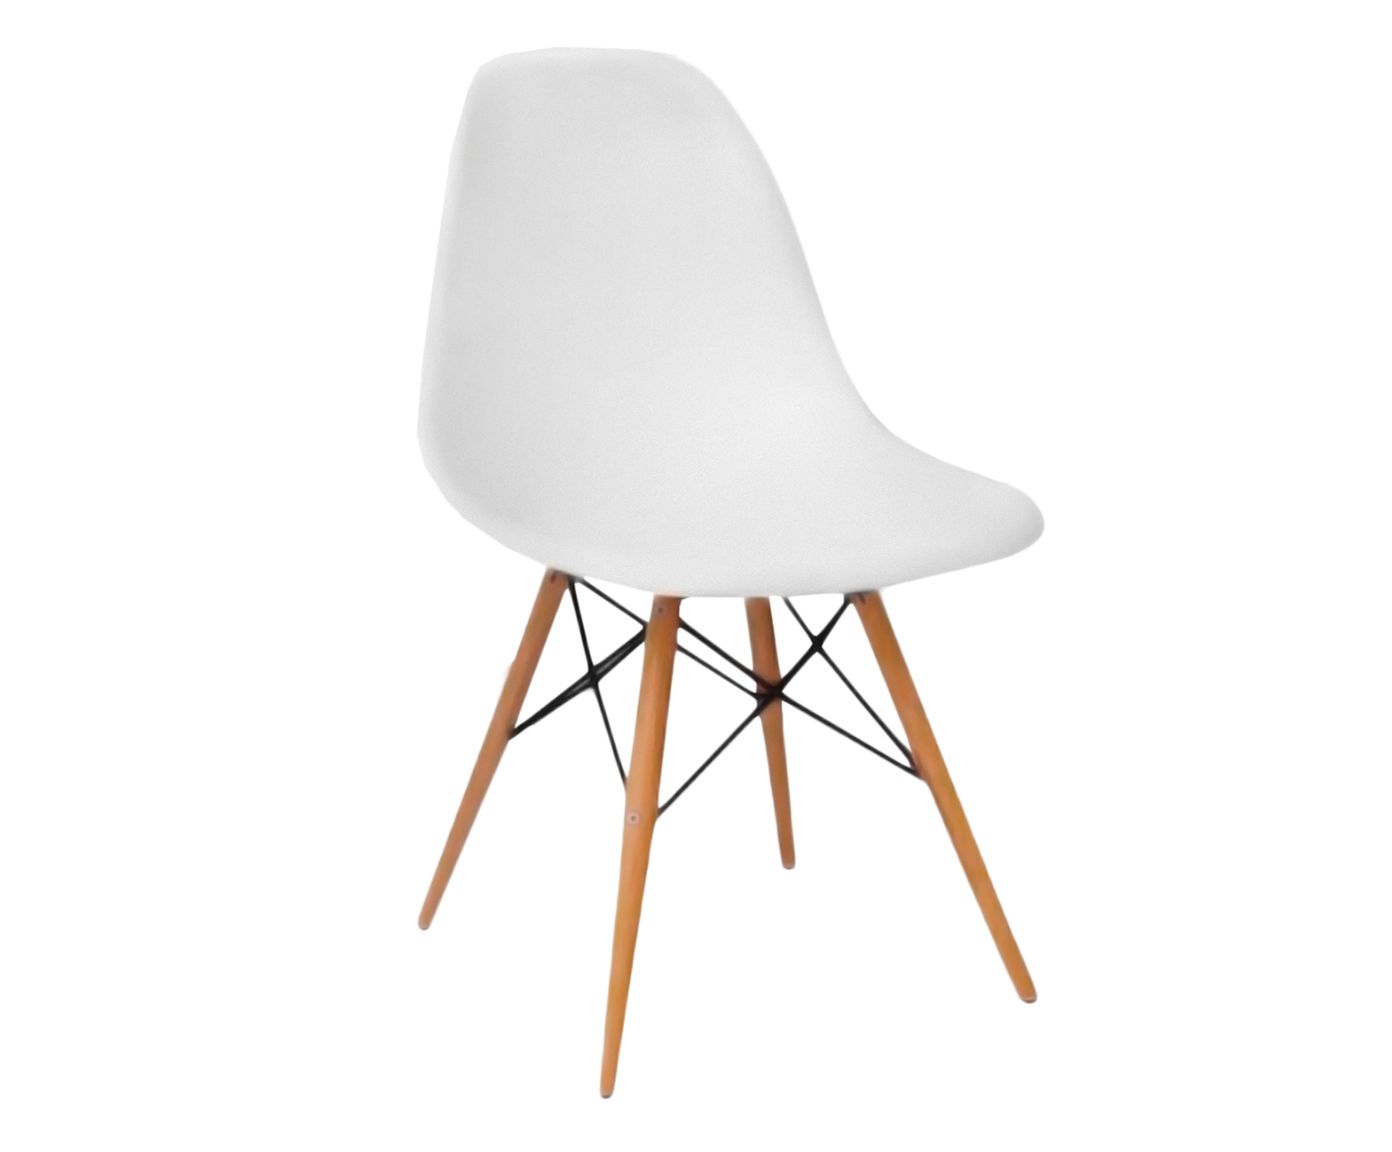 Cadeira paris wood - union | Westwing.com.br